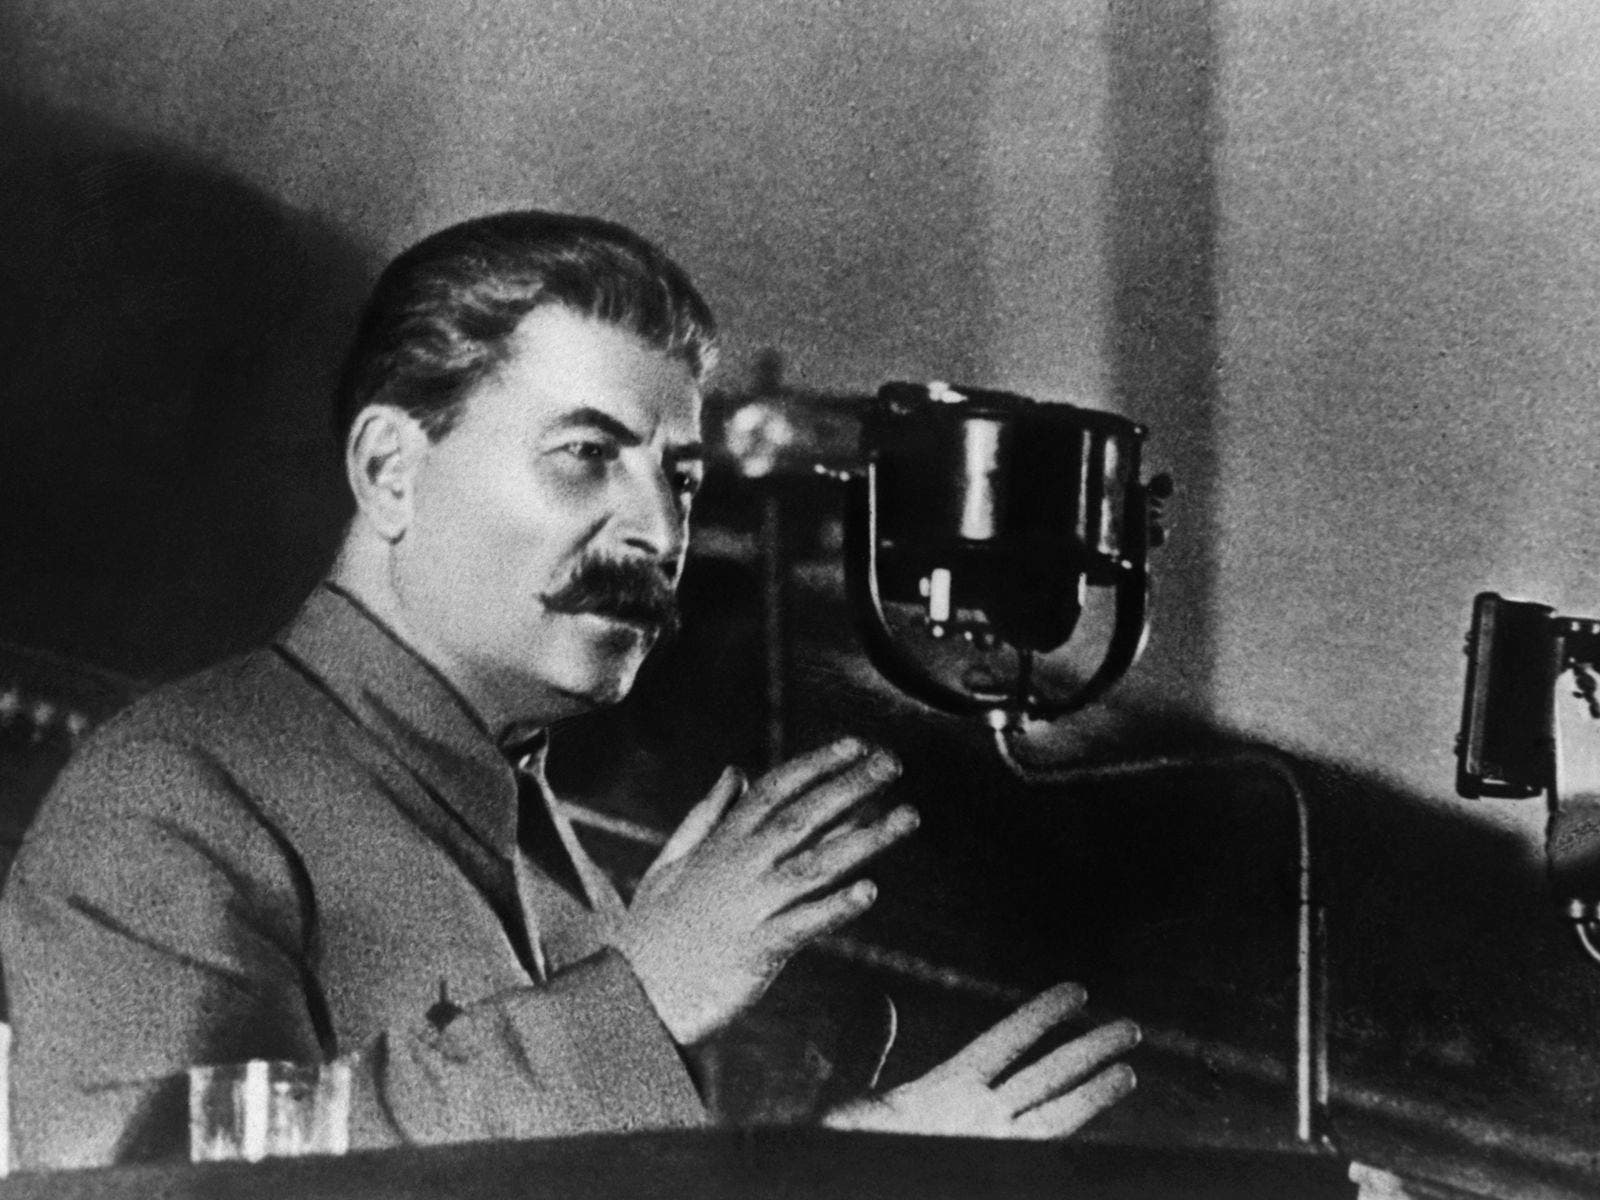 ستالين اثناء القائه لأحد الخطابات